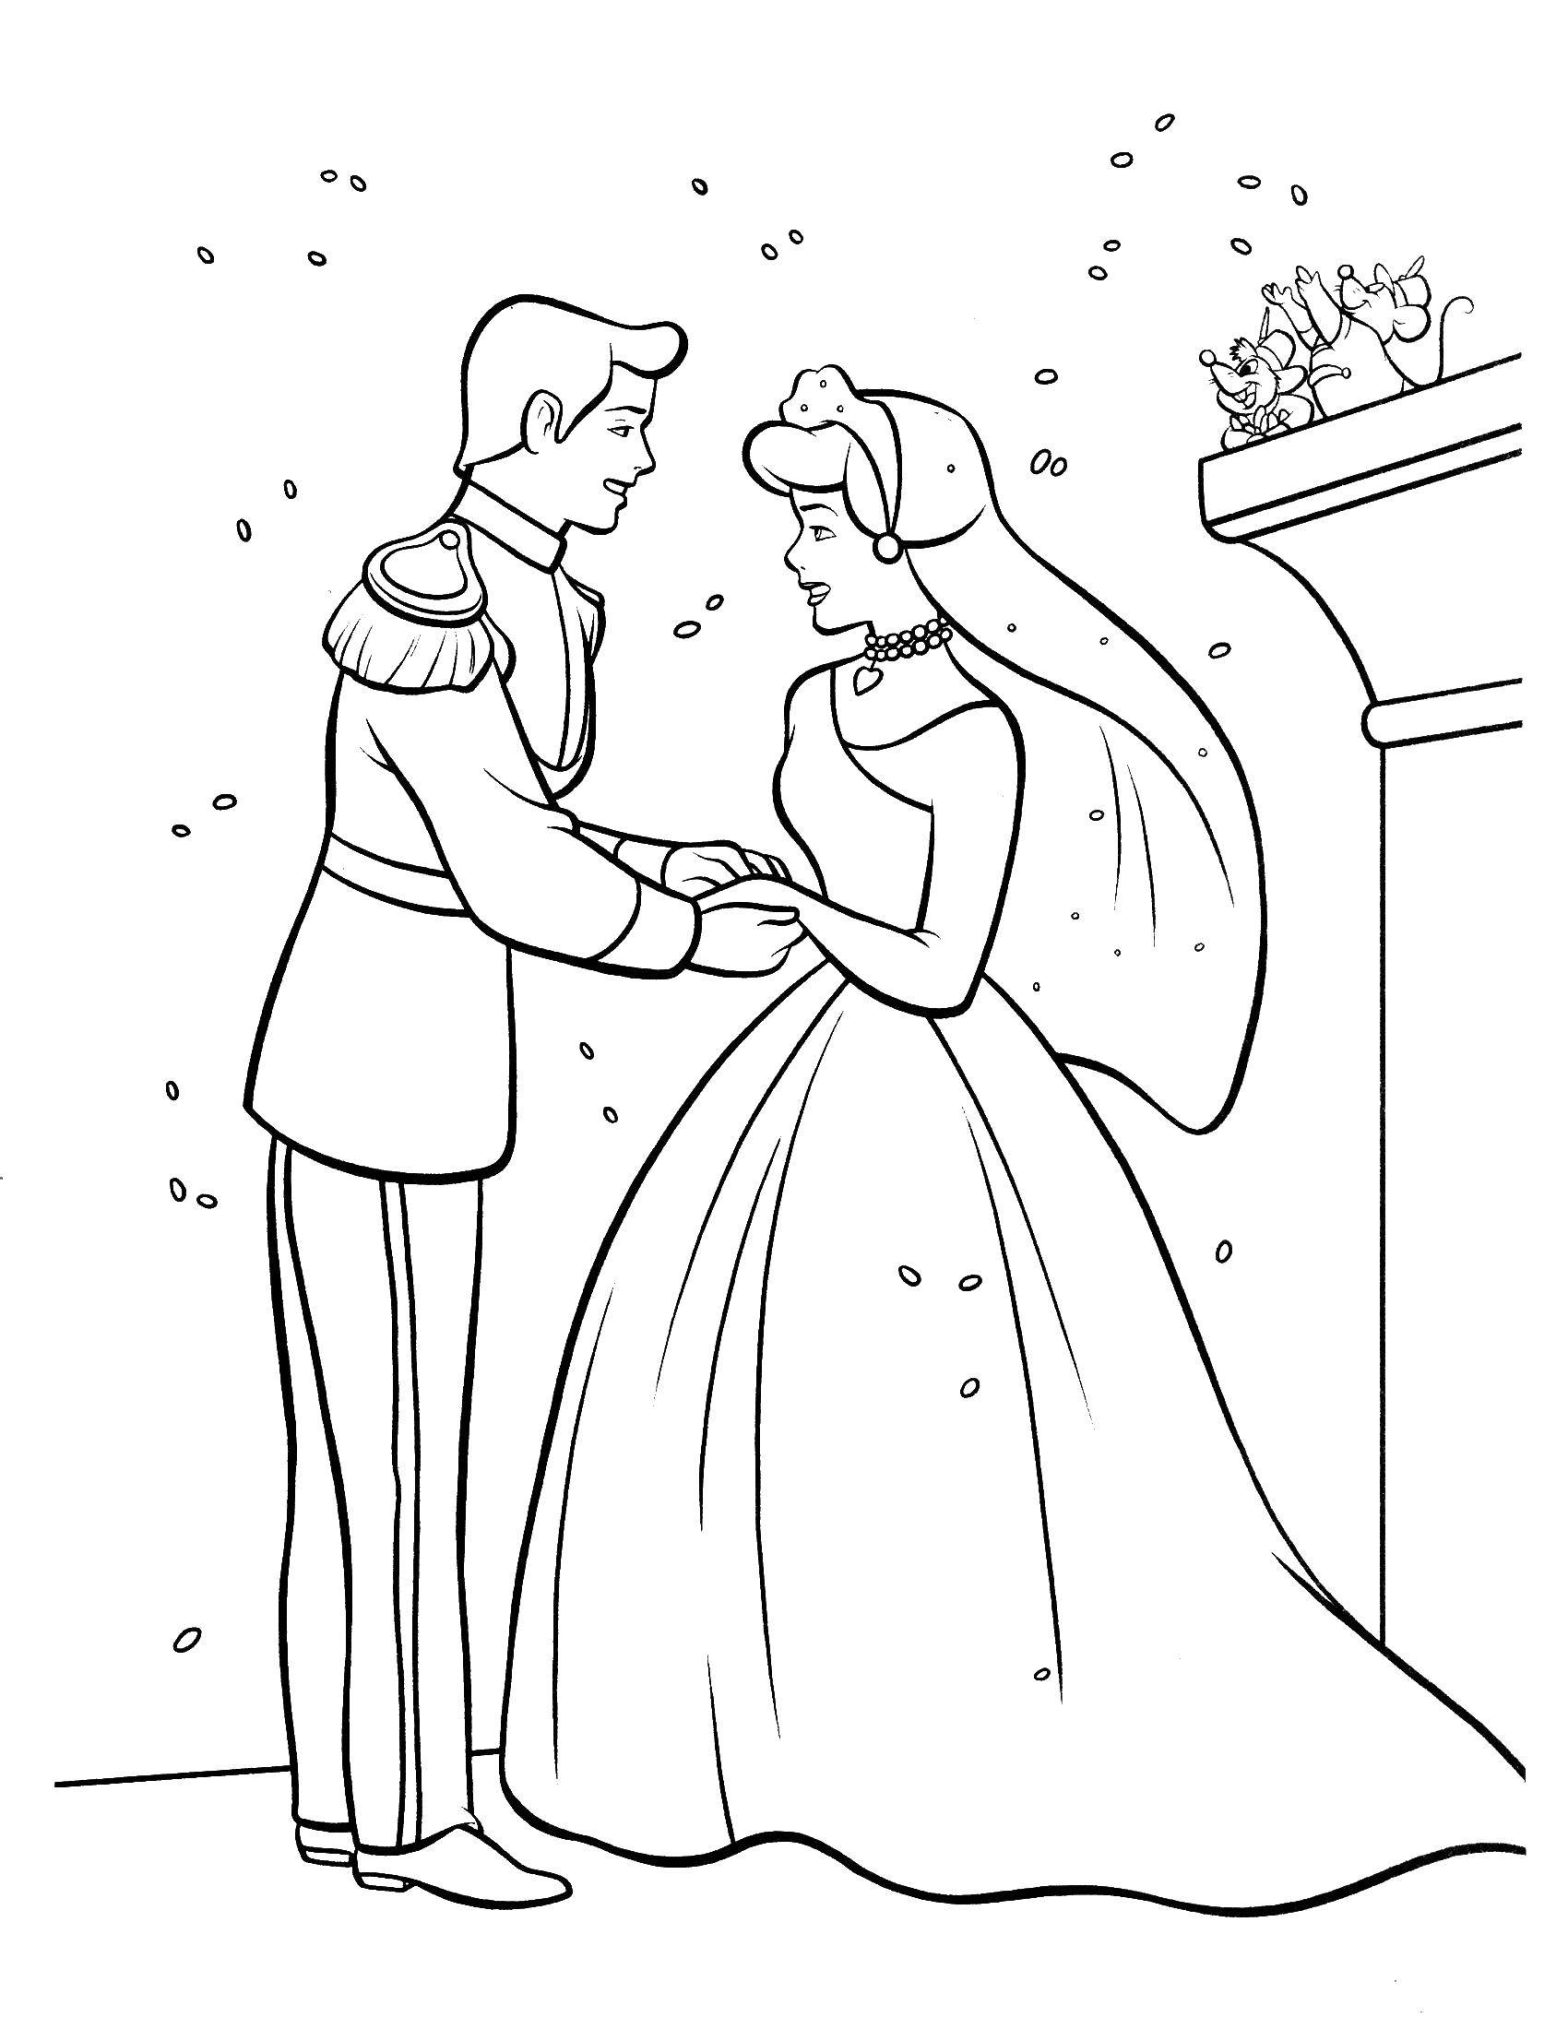 Раскраска на тему свадьбы (принц, принцесса)